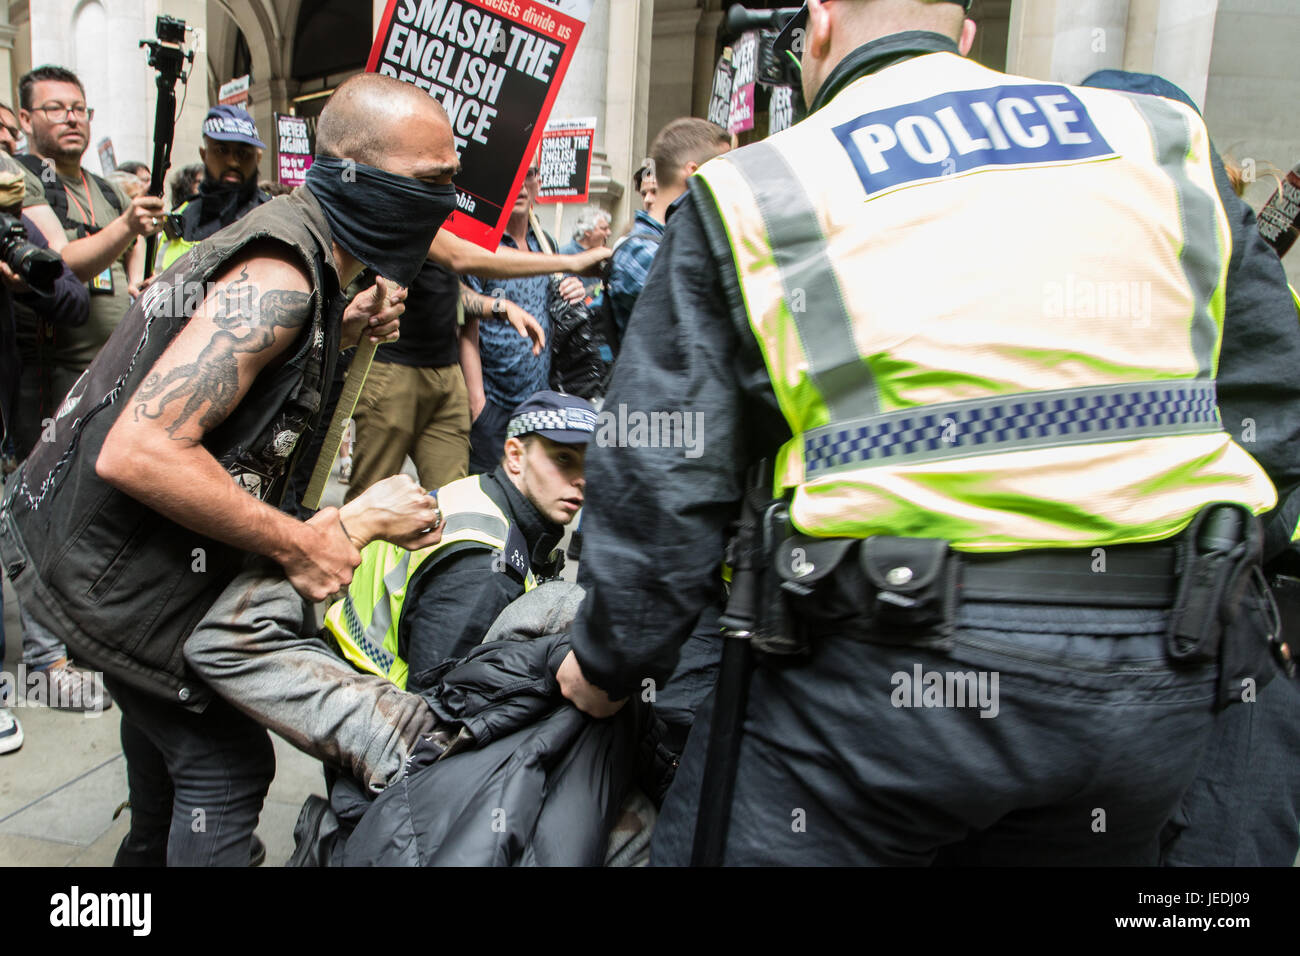 Mars EDL et contre-manifestation de United contre le fascisme. Londres, Royaume-Uni. 24 Juin, 2017. Banque D'Images